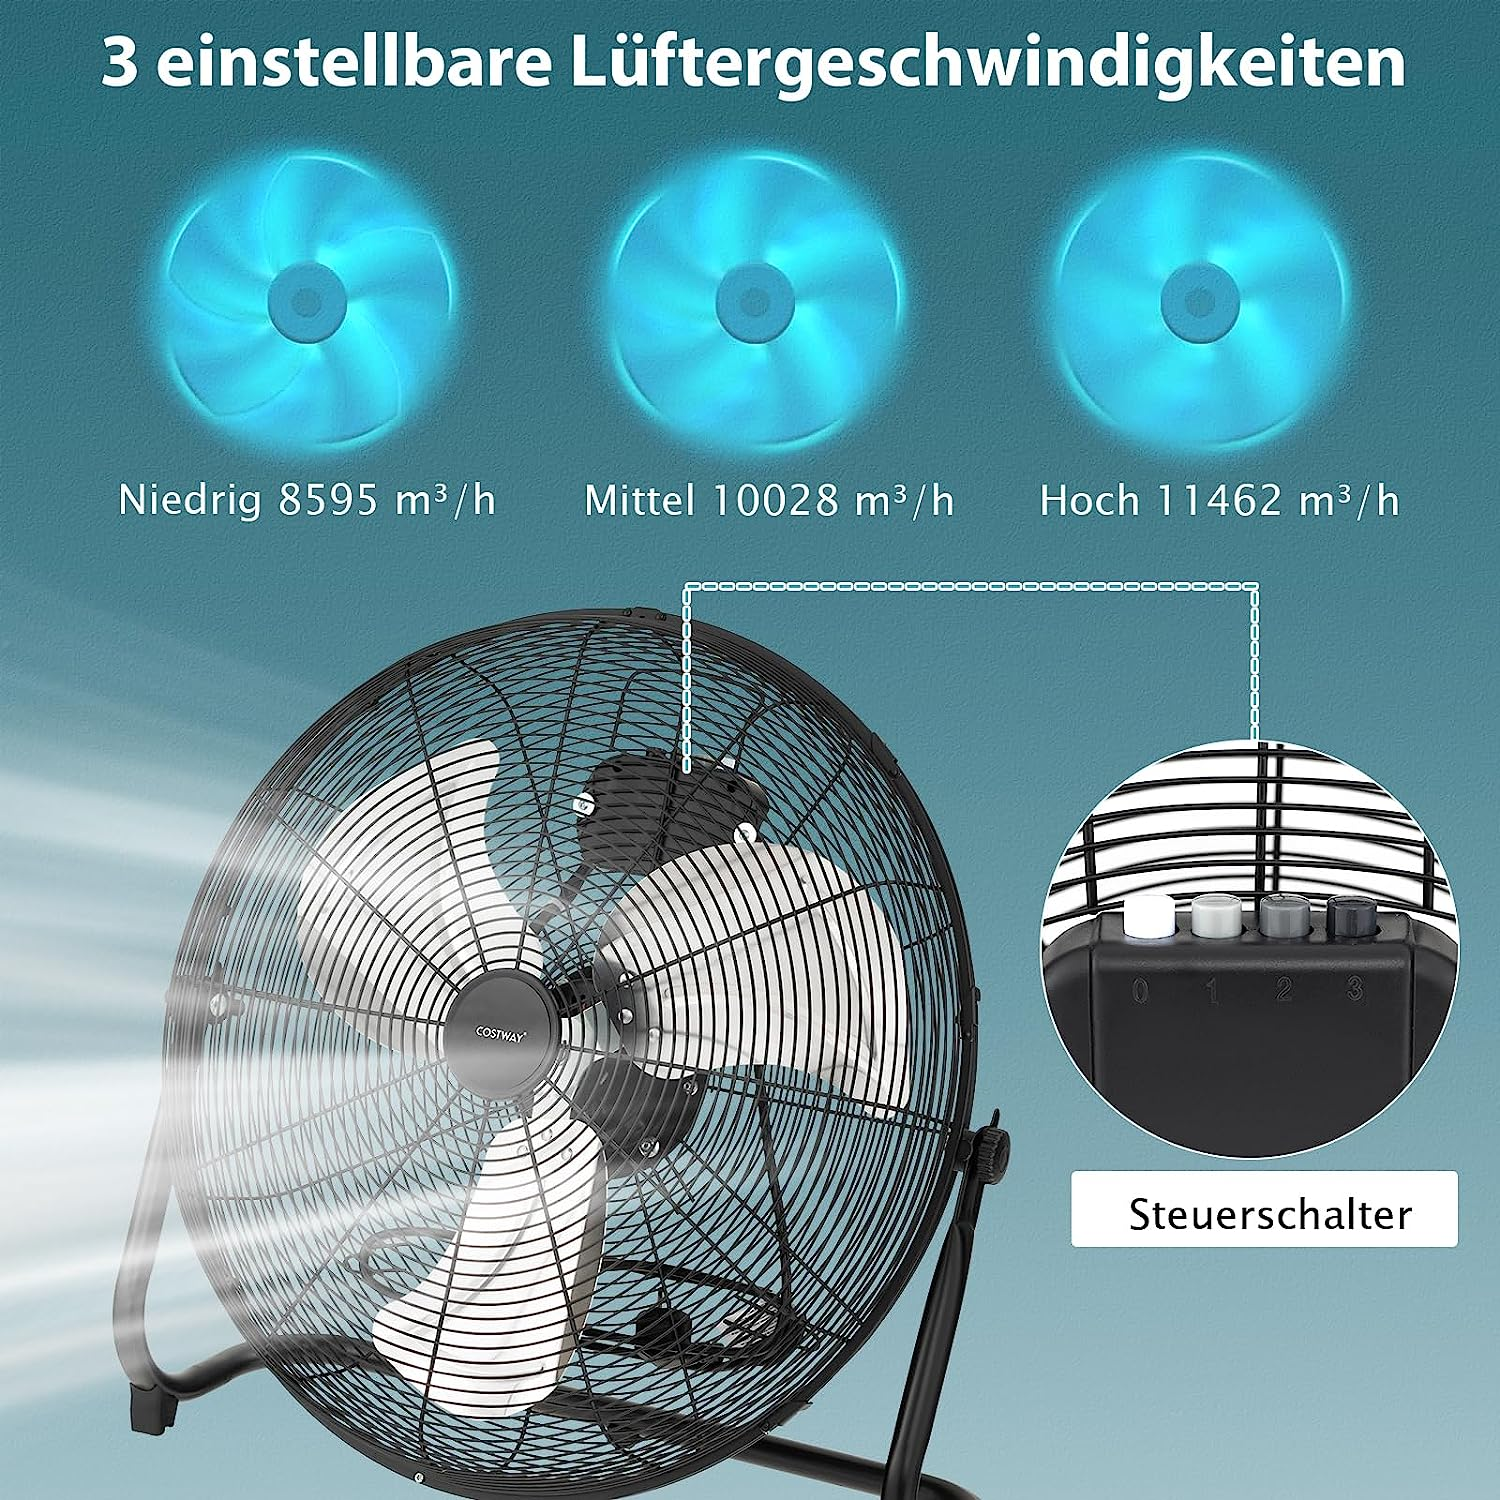 φ51cm Ventilator COSTWAY Schwarz